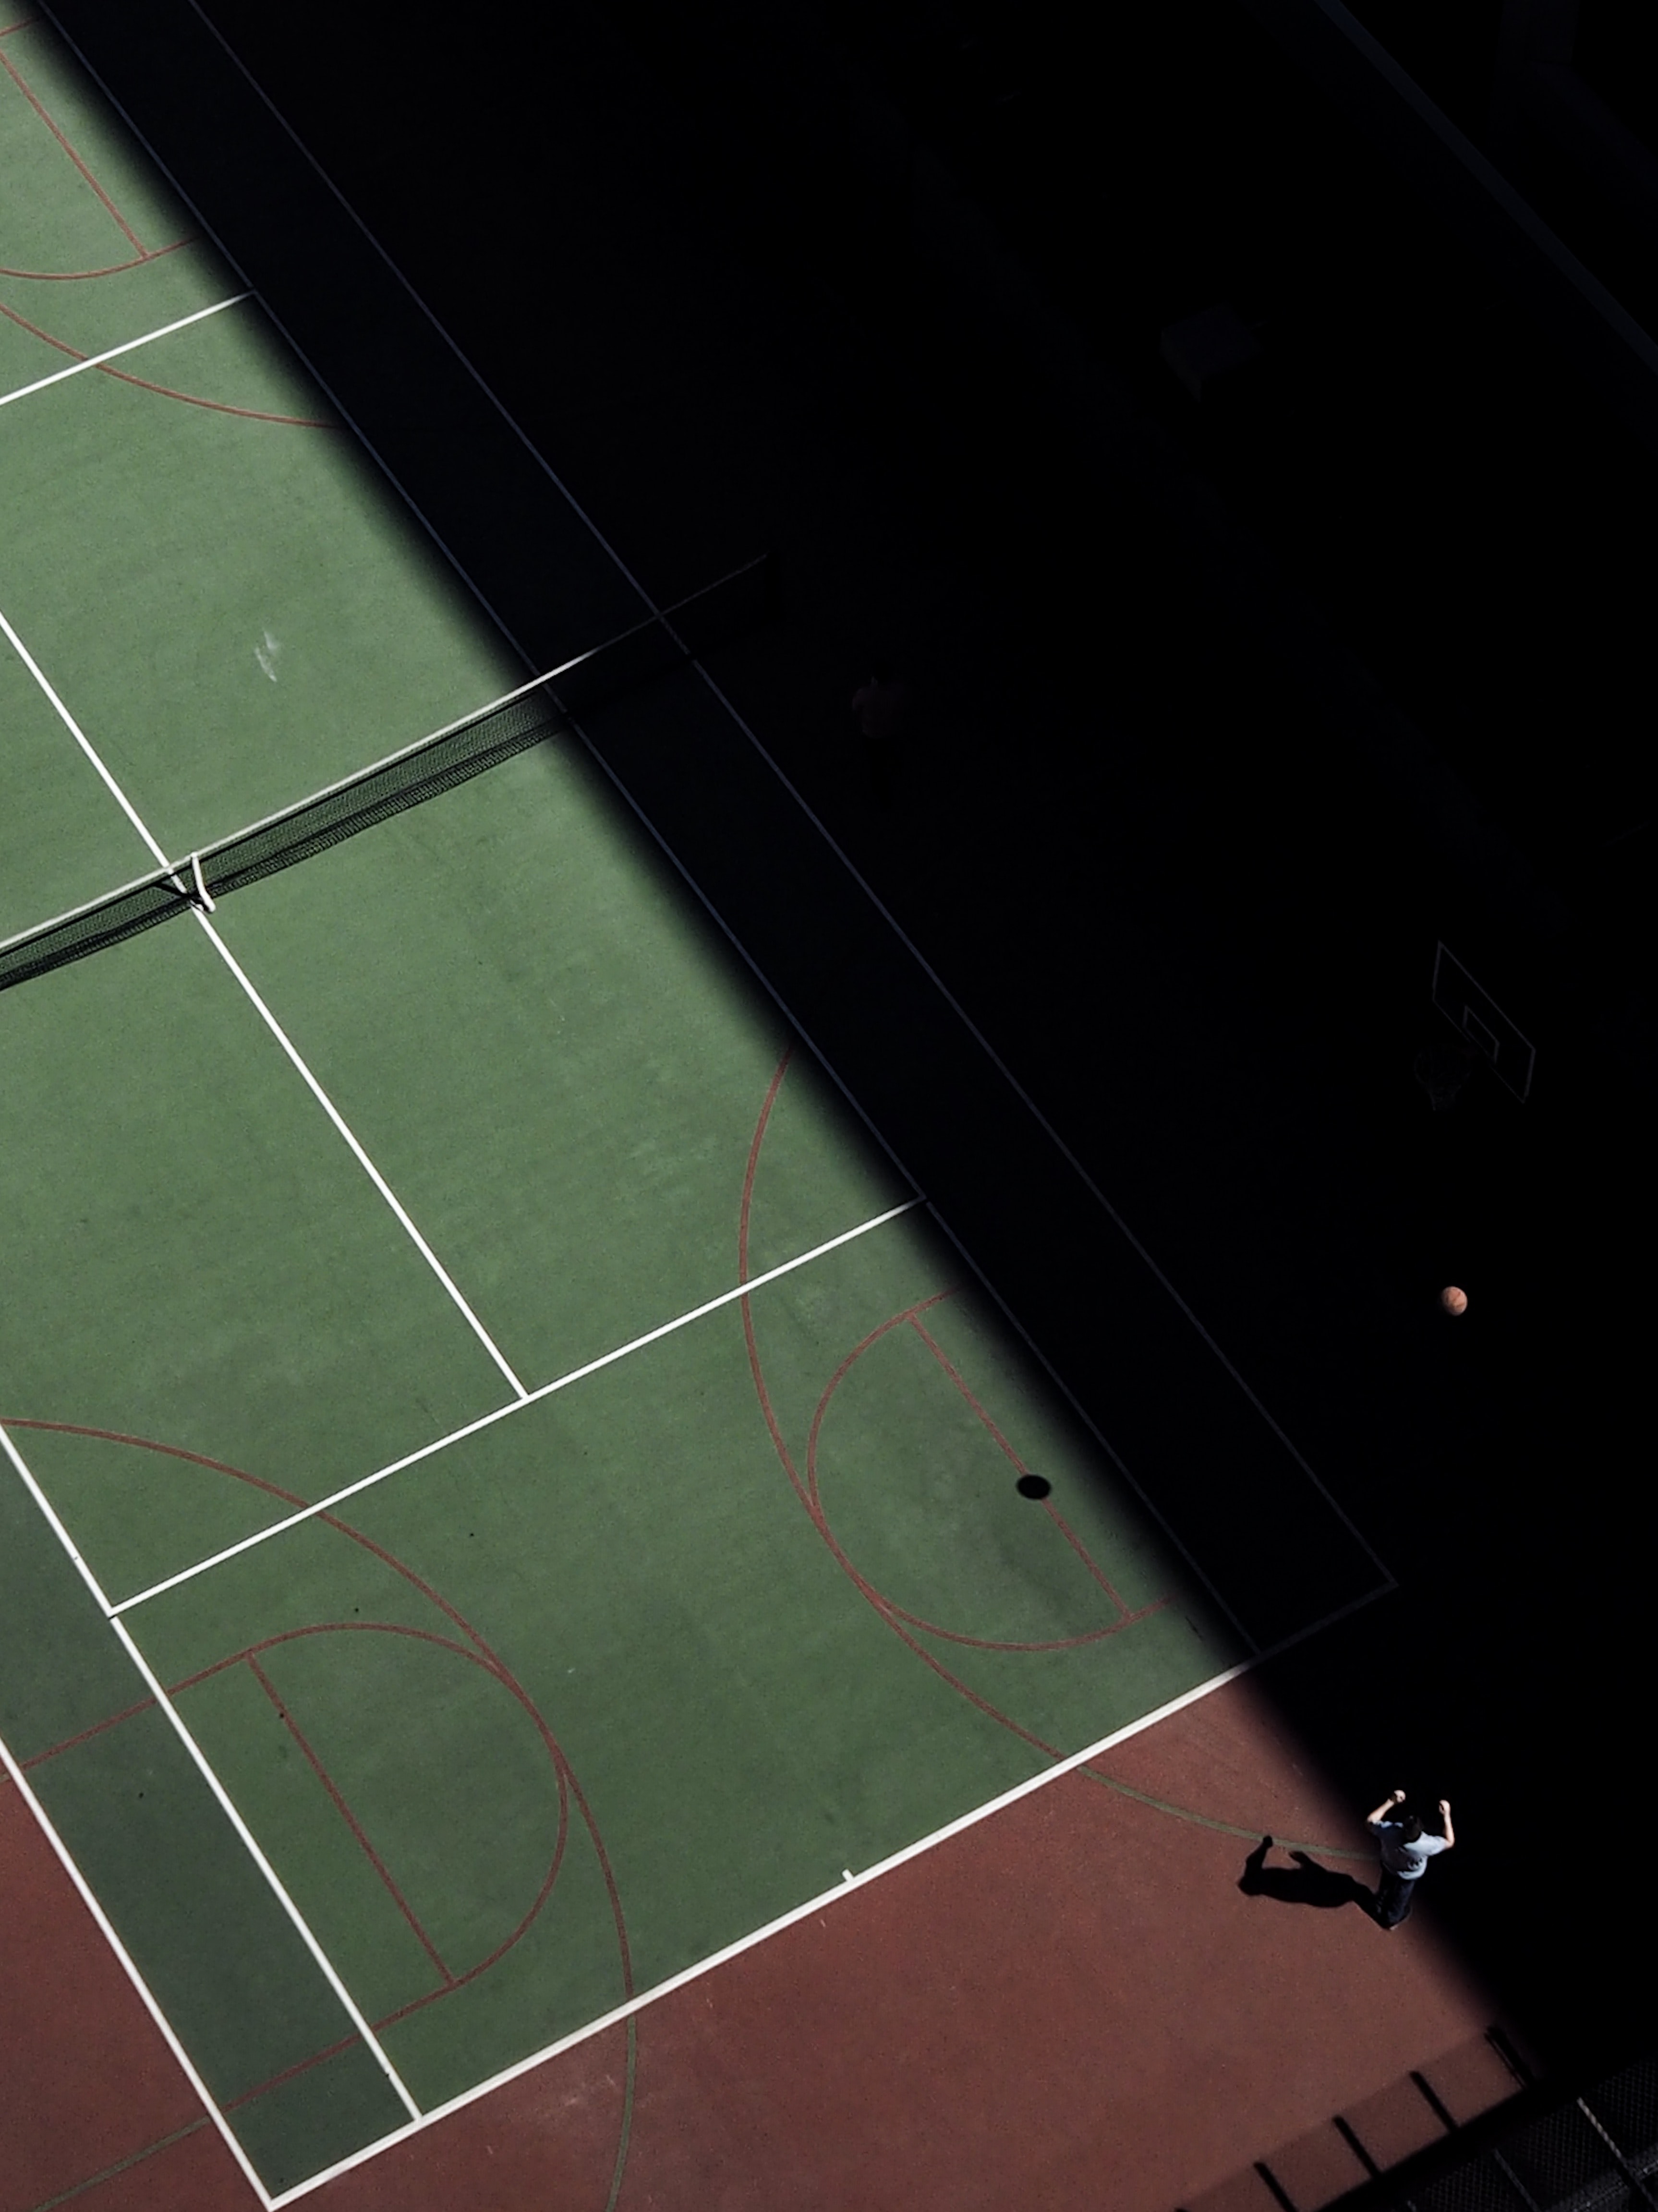 fond d'écran pour mobile,court de tennis,vert,tennis,ligne,lumière